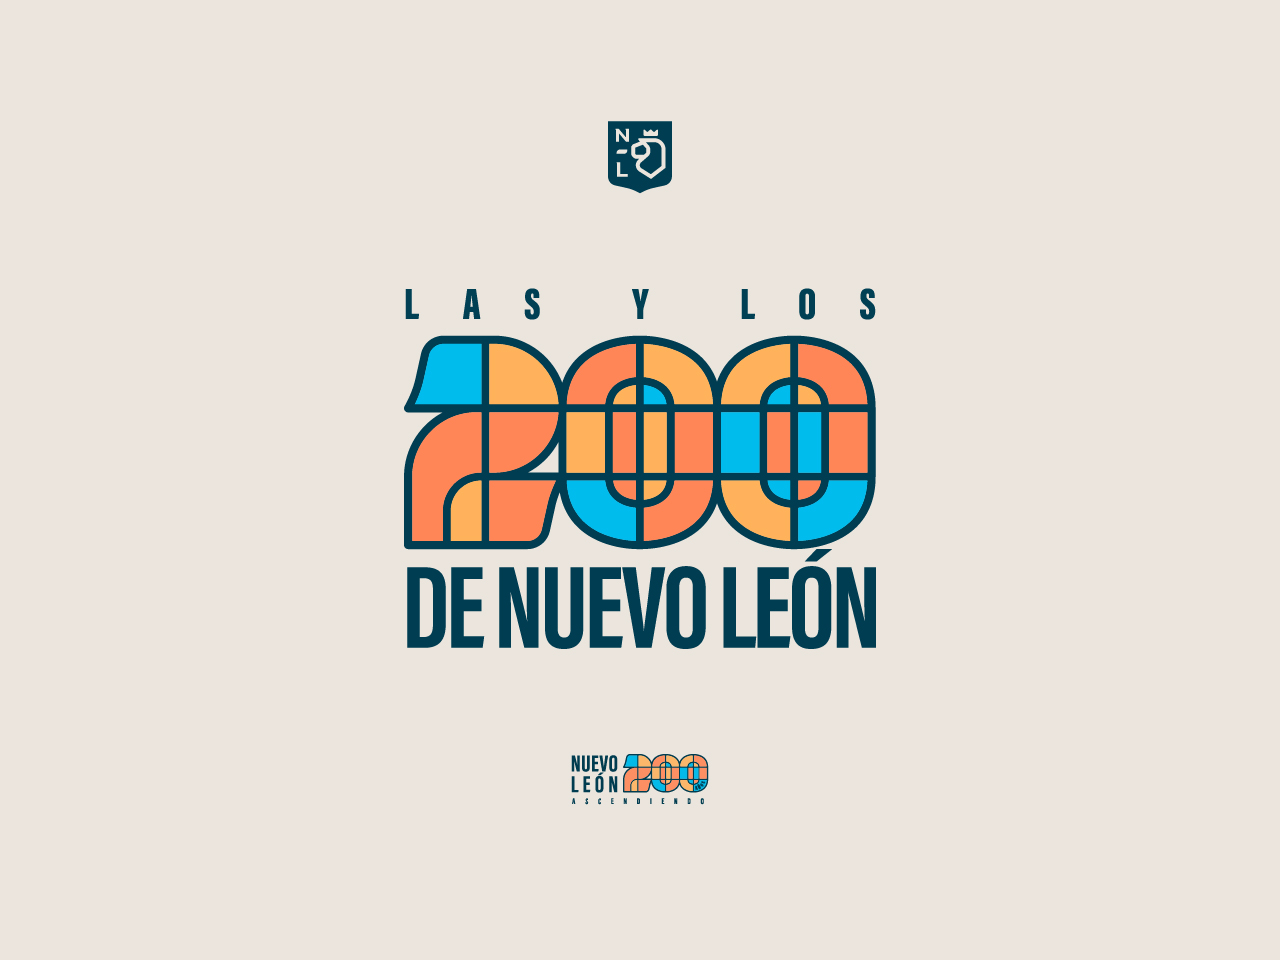 Proyecto emblemático: Las y los 200 de Nuevo León